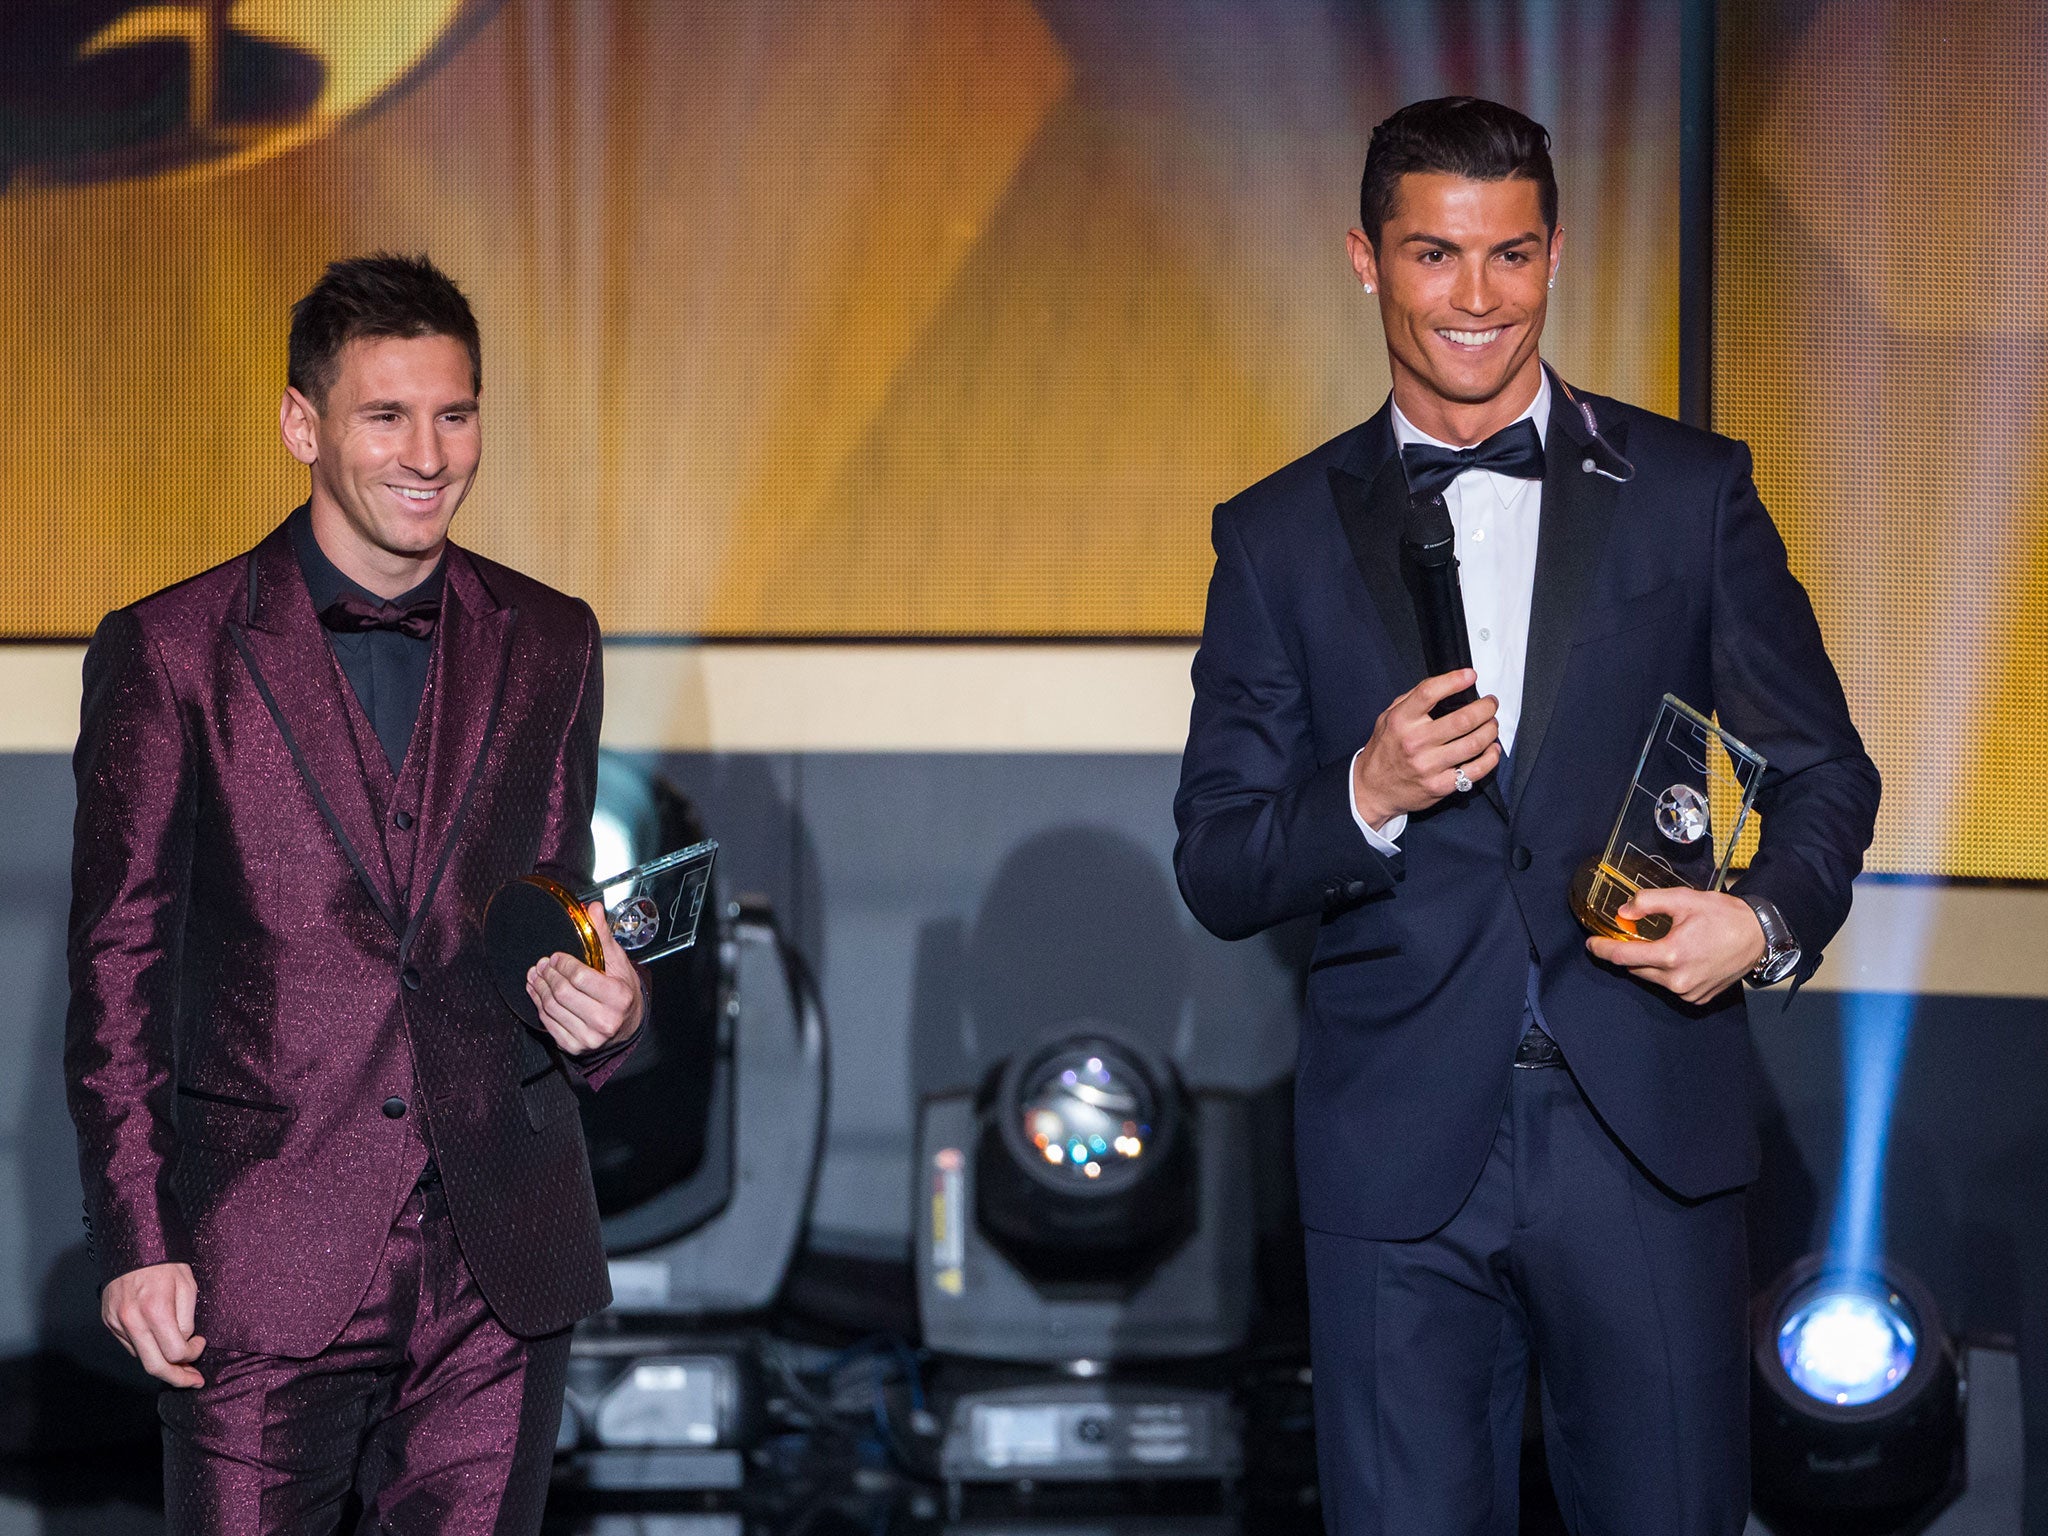 Messi was beaten by Ronaldo to the Ballon d'Or award